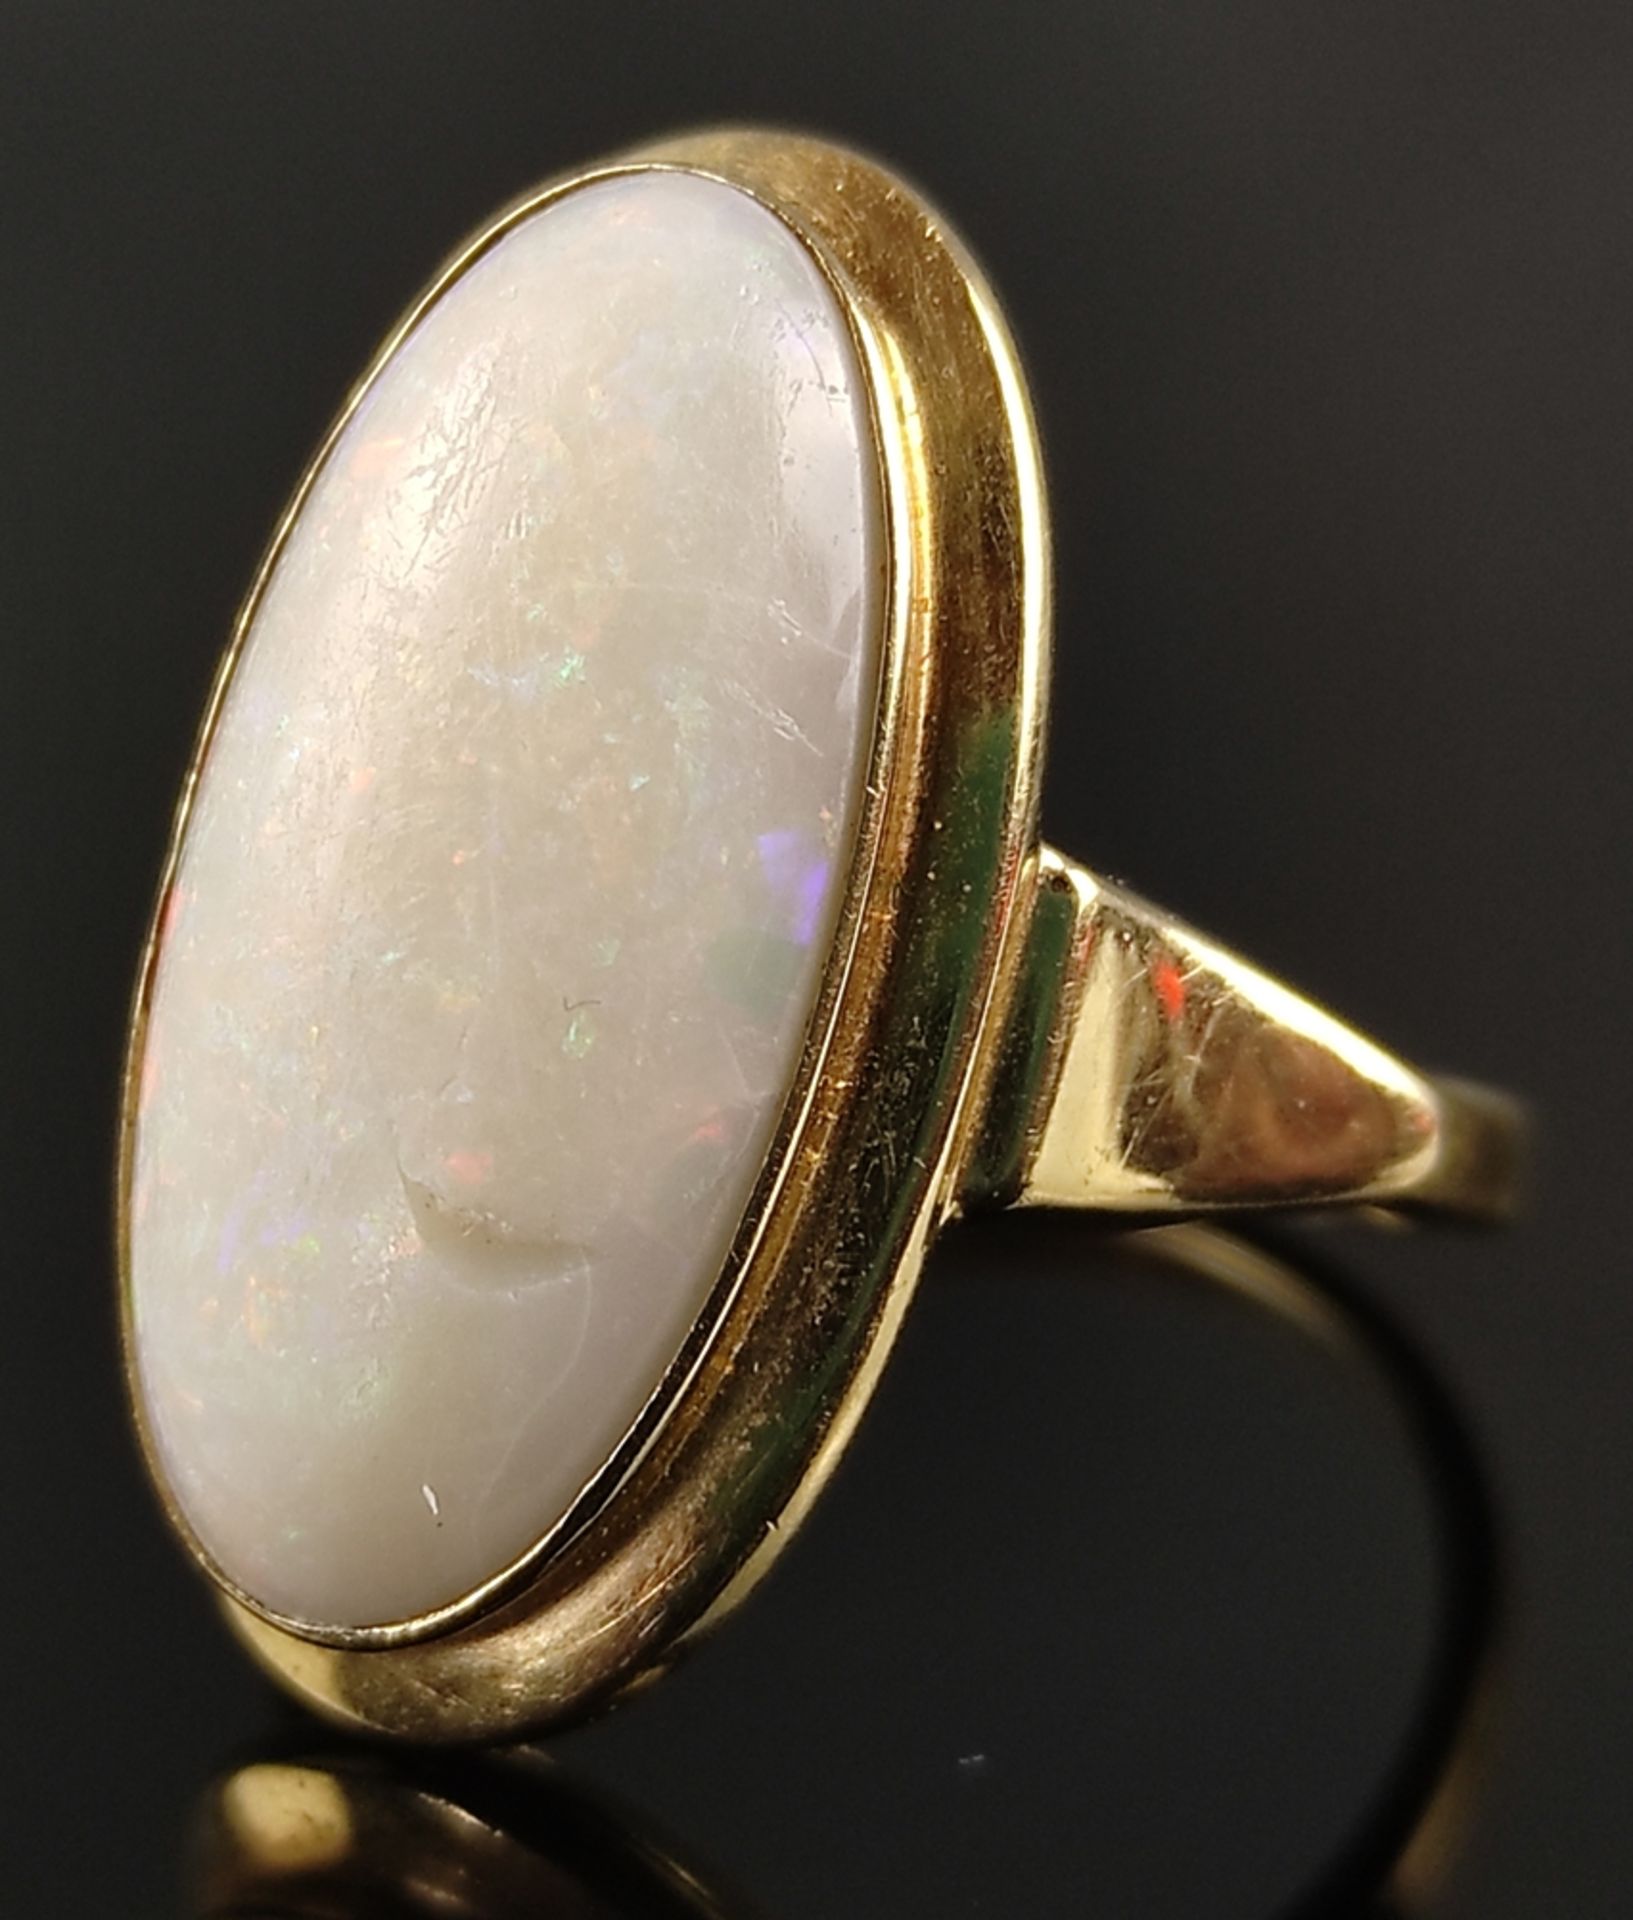 Opal-Ring, großer ovaler Opal 19,9x9,9mm, (kleiner Chip), eingefasst in 585/14K Gelbgold, Gesamtgew